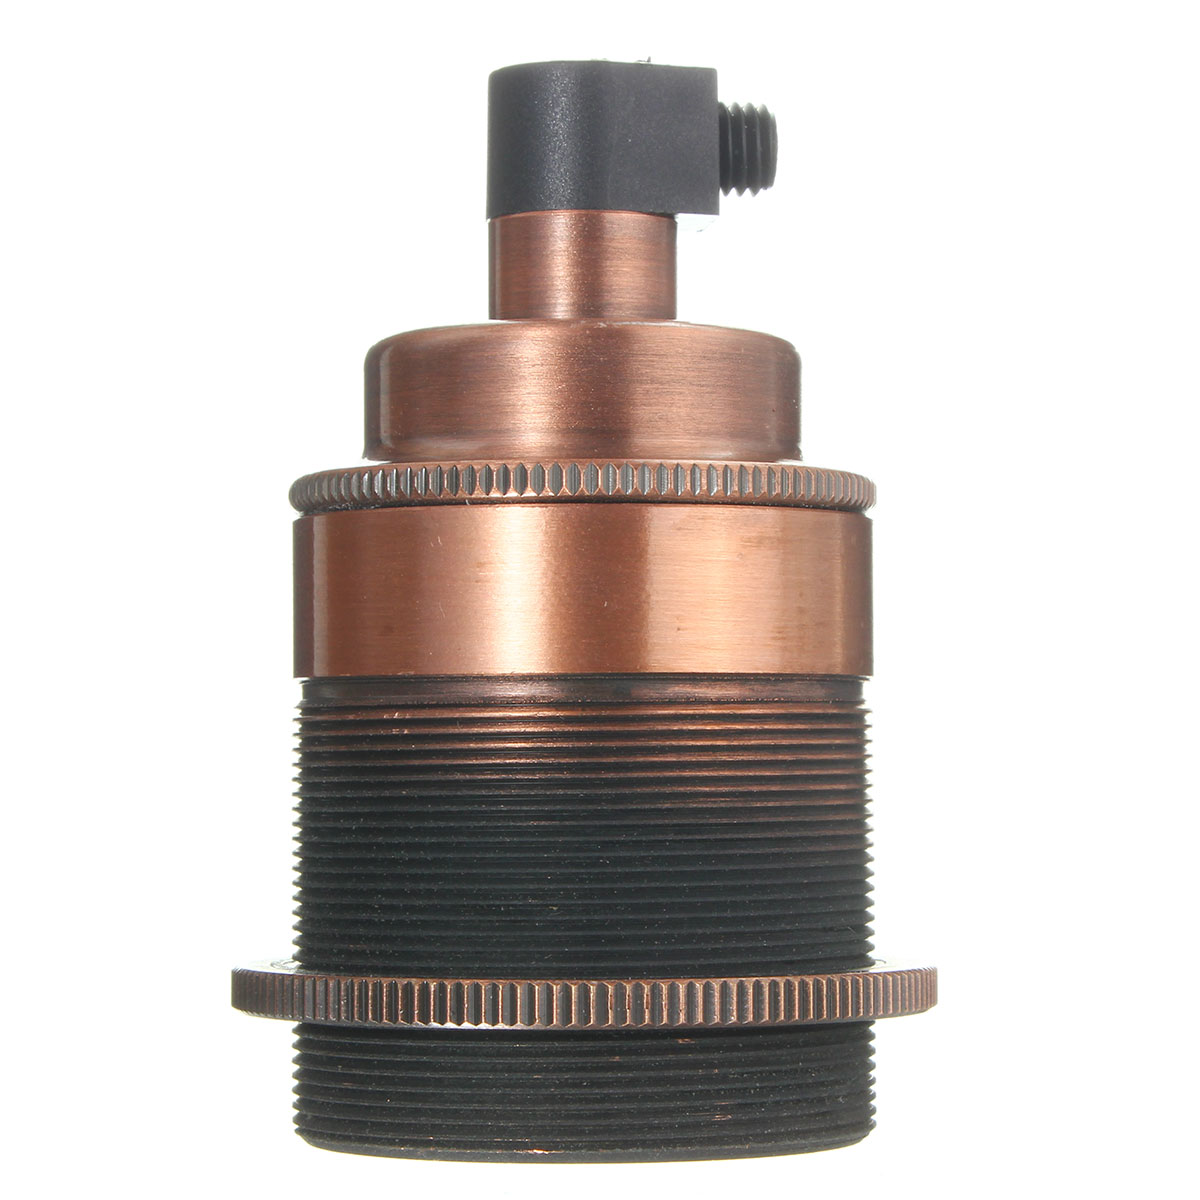 E27-Vintage-Copper-Edison-Light-Bulb-Adapter-Lamp-Holder-for-Pendant-Lighting-AC110-250V-1431440-2